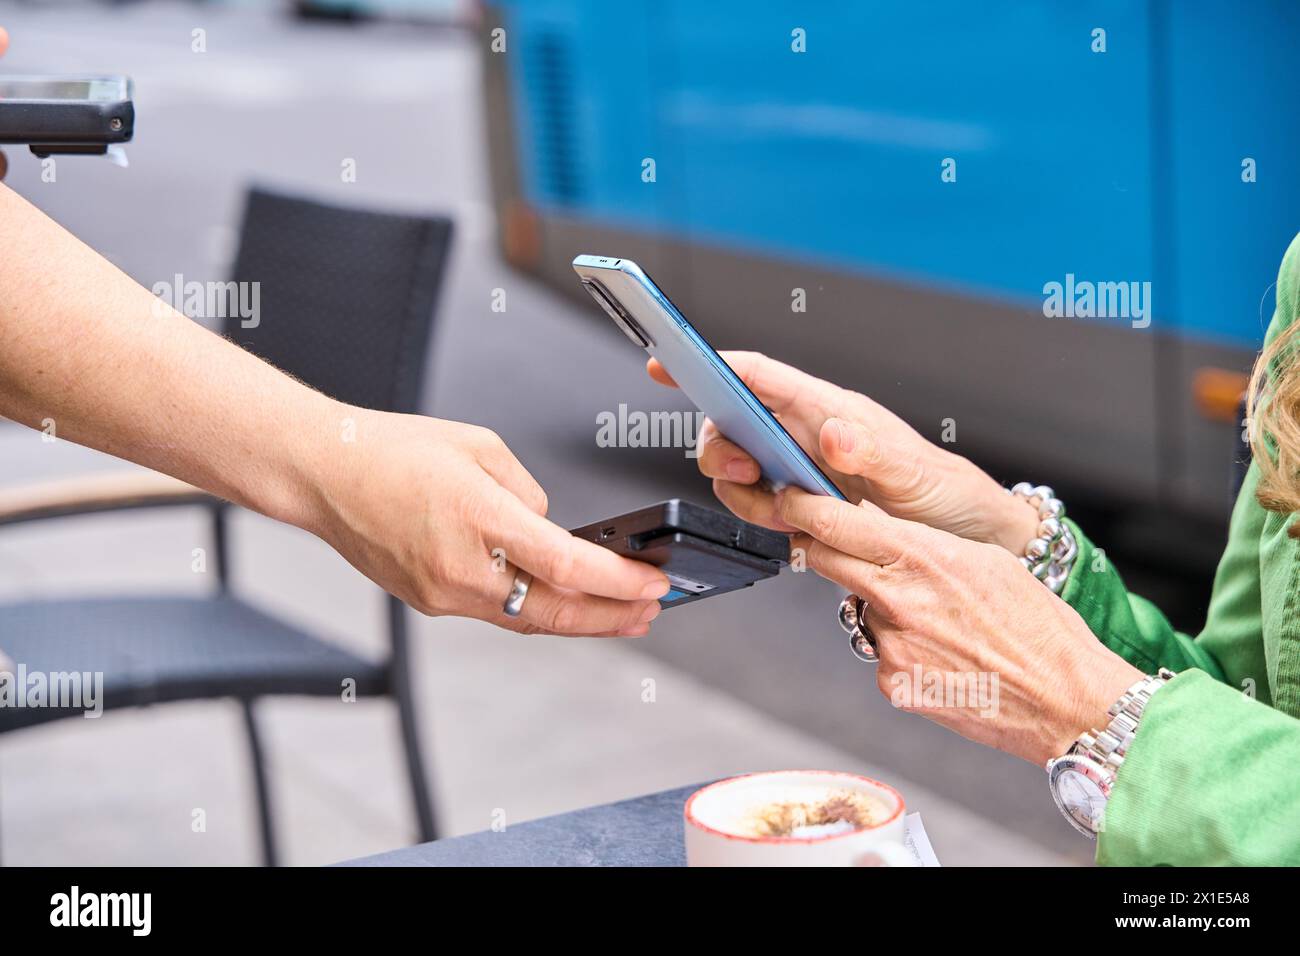 Femme payant la facture via son smartphone en utilisant la technologie NFC dans un restaurant. Gros plan mains de paiement mobile dans un café Banque D'Images